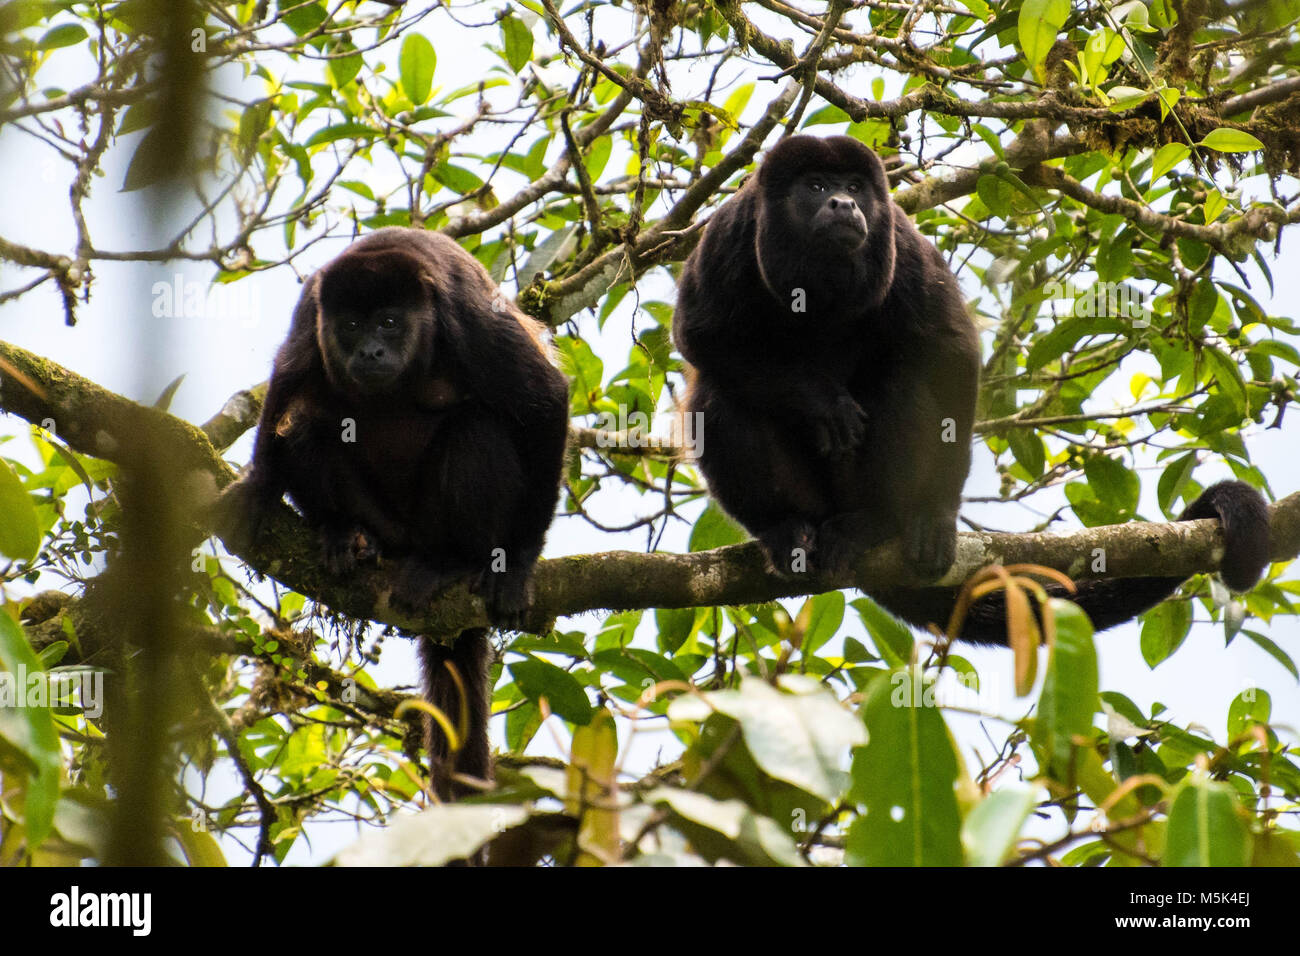 Une paire de fuligineux équatorienne (hurleurs Alouatta palliata aequatorialis) s'asseoir dans un arbre. Banque D'Images